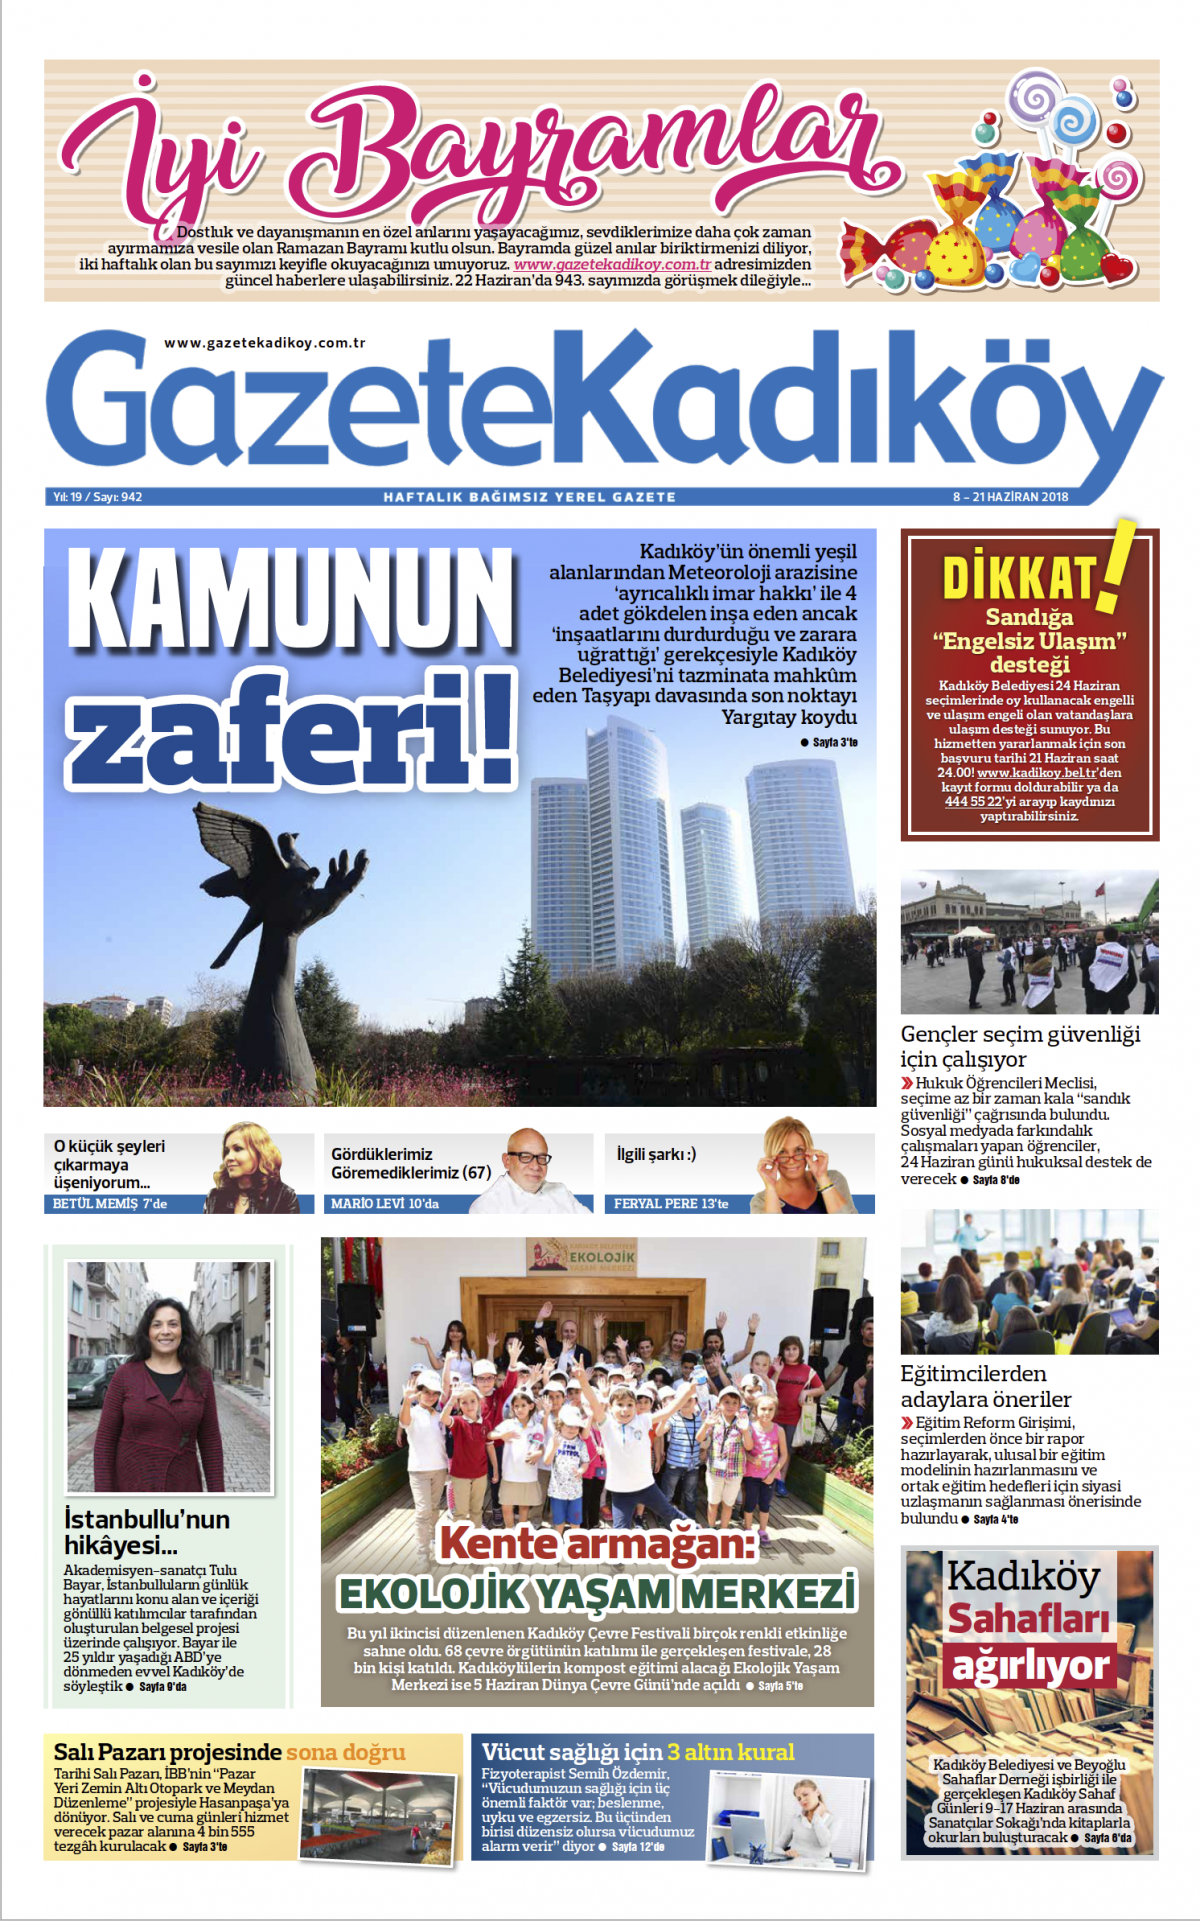 Gazete Kadıköy - 942. SAYI